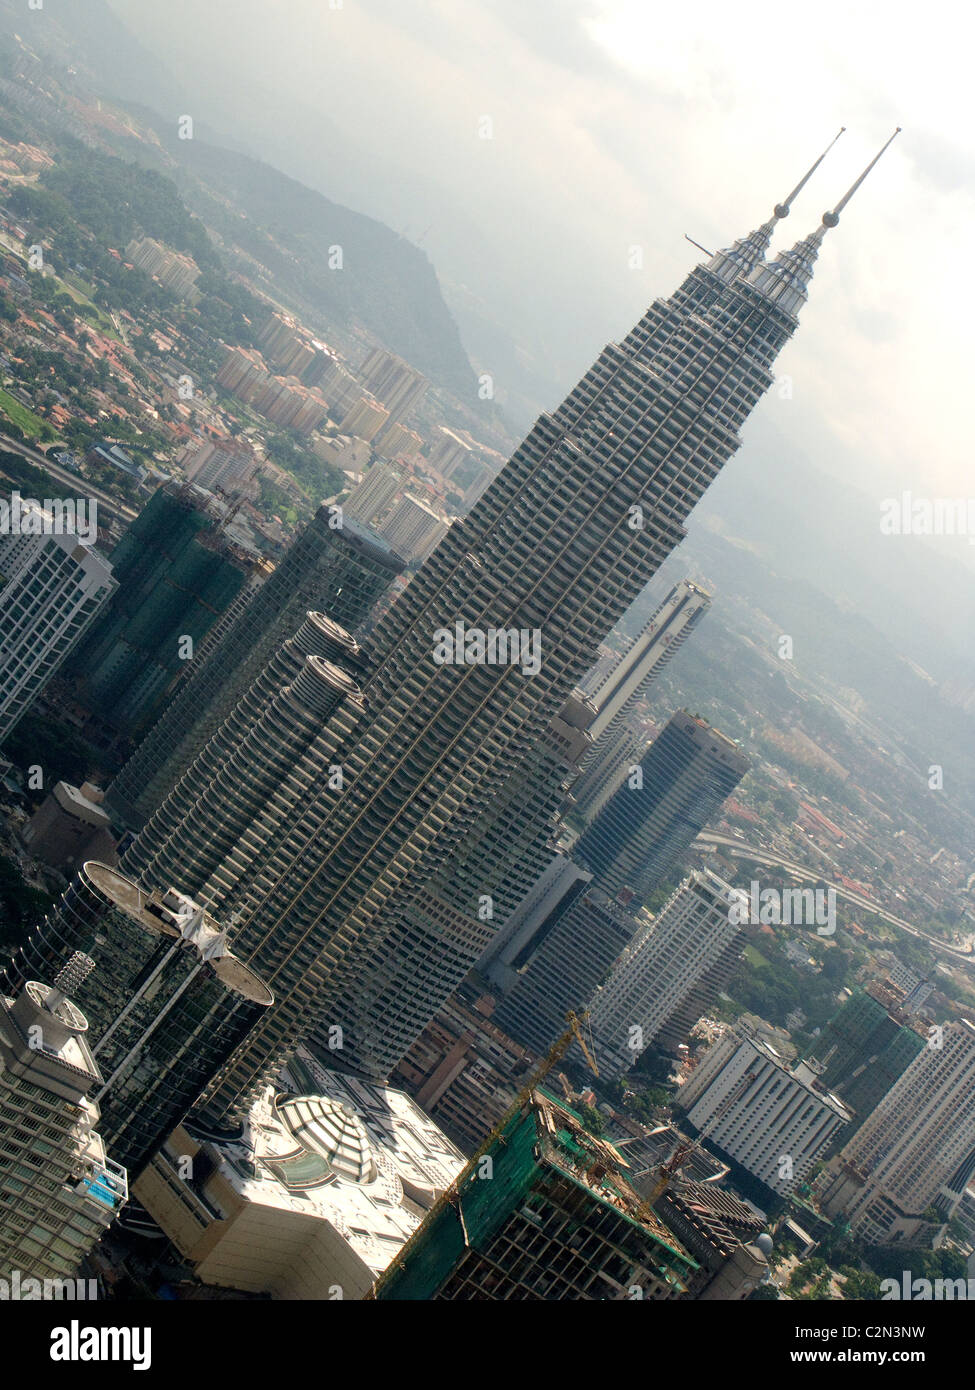 Les tours jumelles Petronas de Kuala Lumpur, Malaisie. Banque D'Images